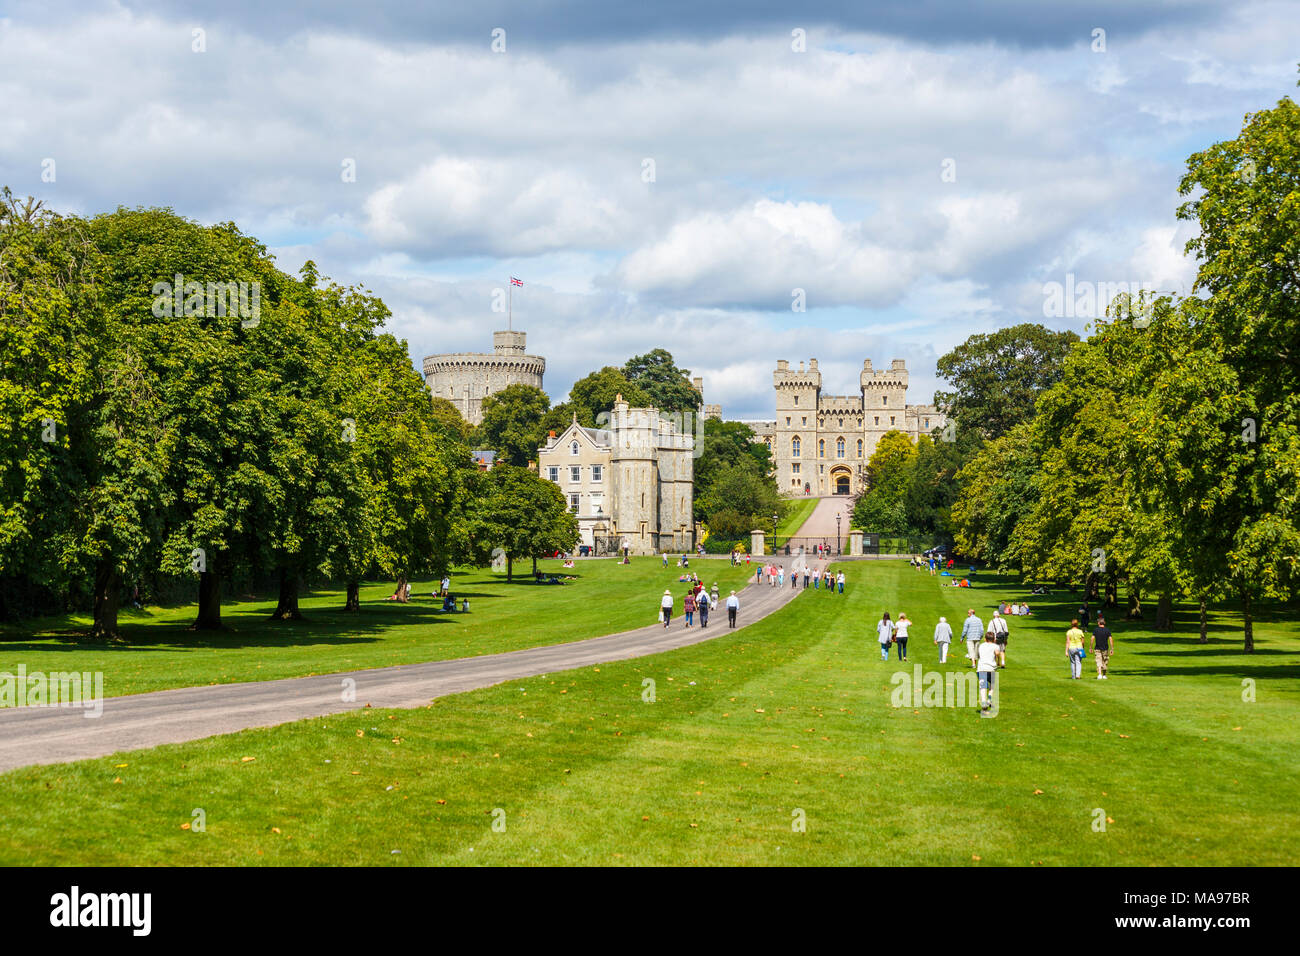 Residencia real y el icónico edificio histórico Castillo de Windsor vistos a lo largo de Paseo en Windsor Great Park en un día soleado de verano Foto de stock